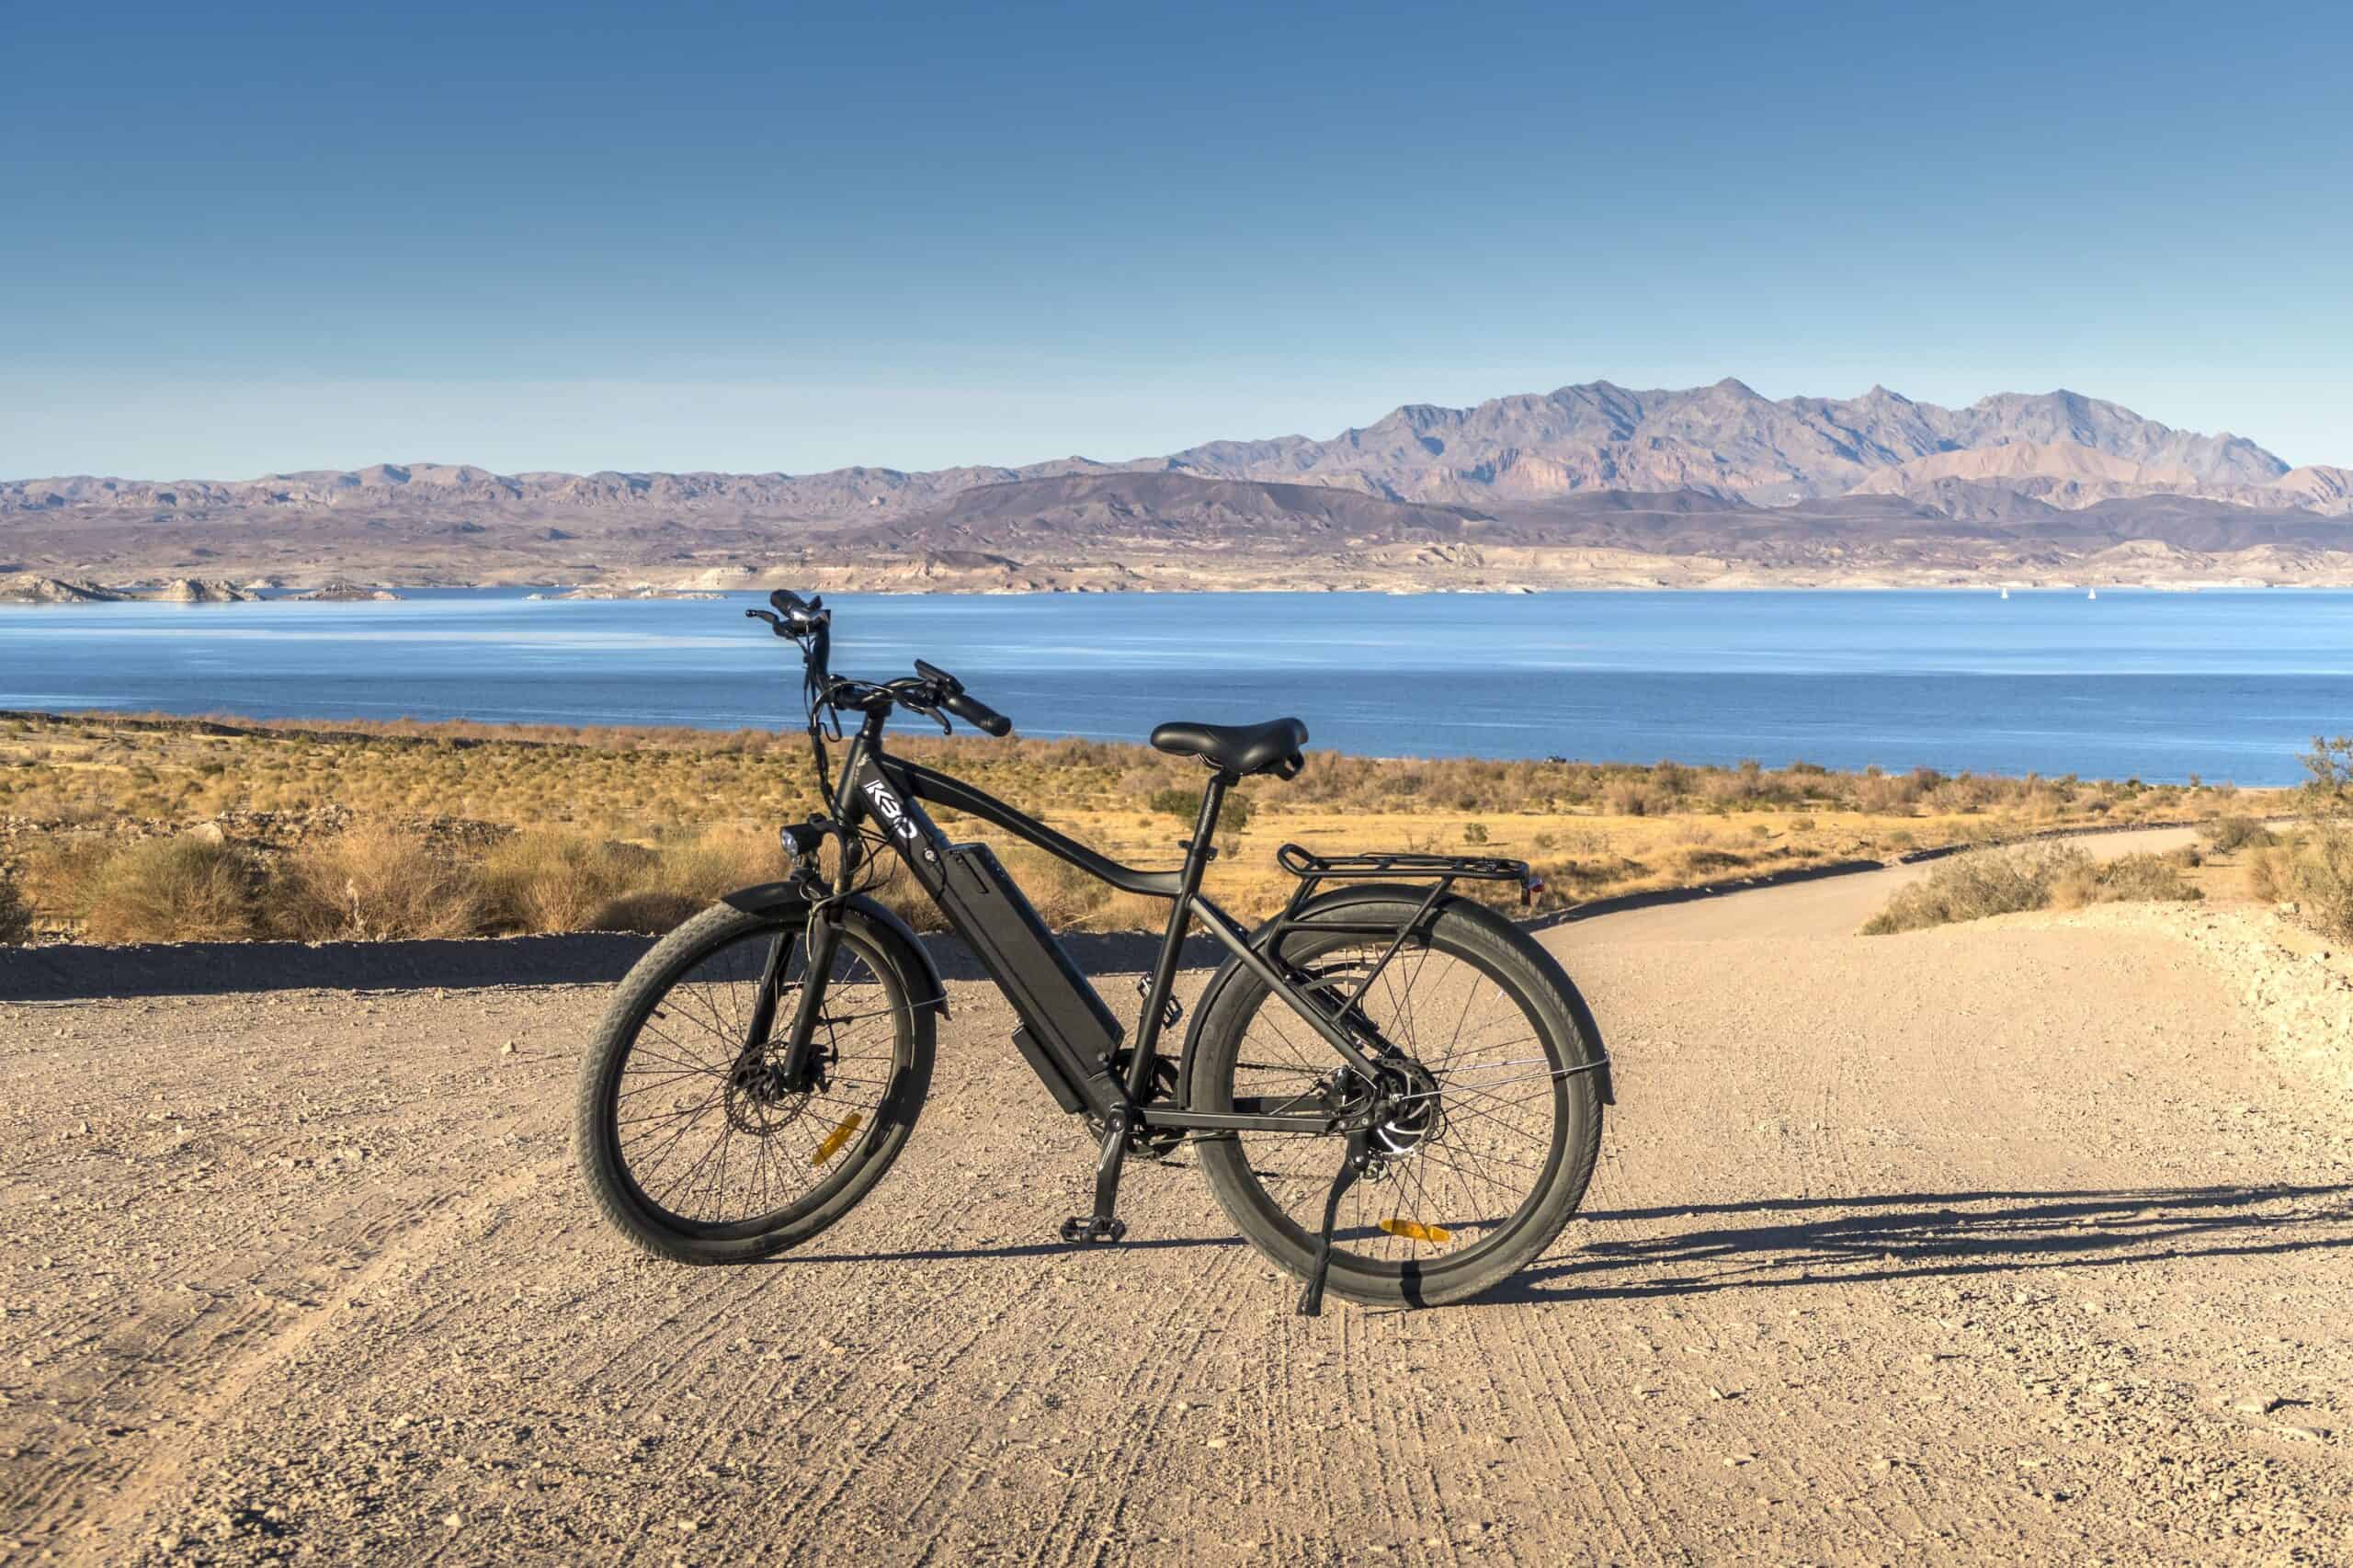 Ładowarka do roweru – kluczowy element dla rowerzystów podczas długich podróży